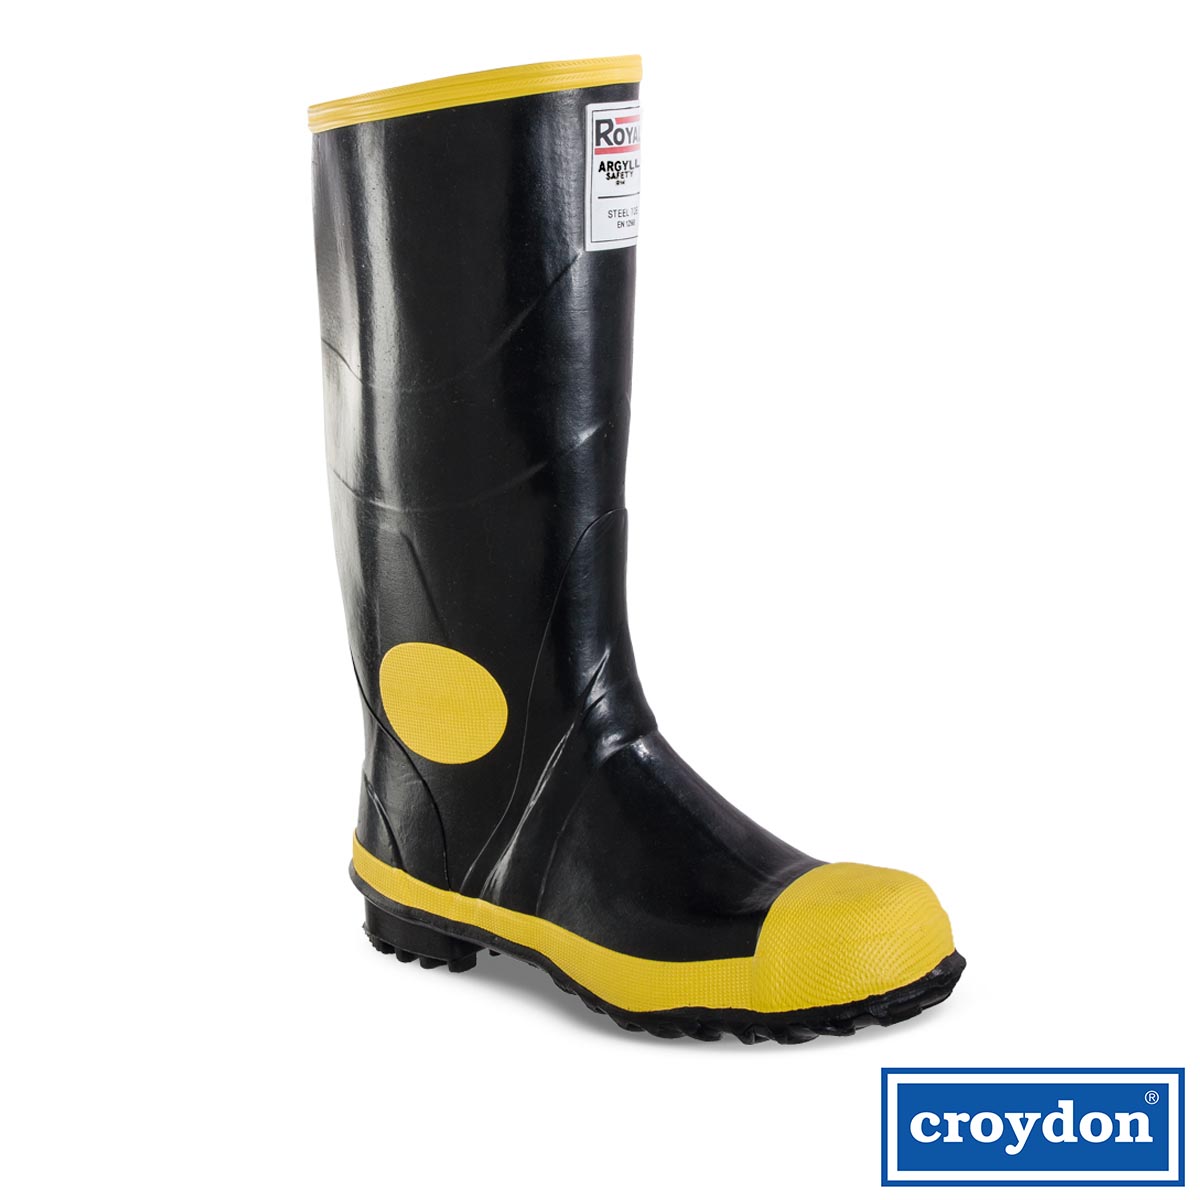 botas-croydon-royal-amarilla-super-argyl-punta-de-acero-dotaciones-a-domicilio